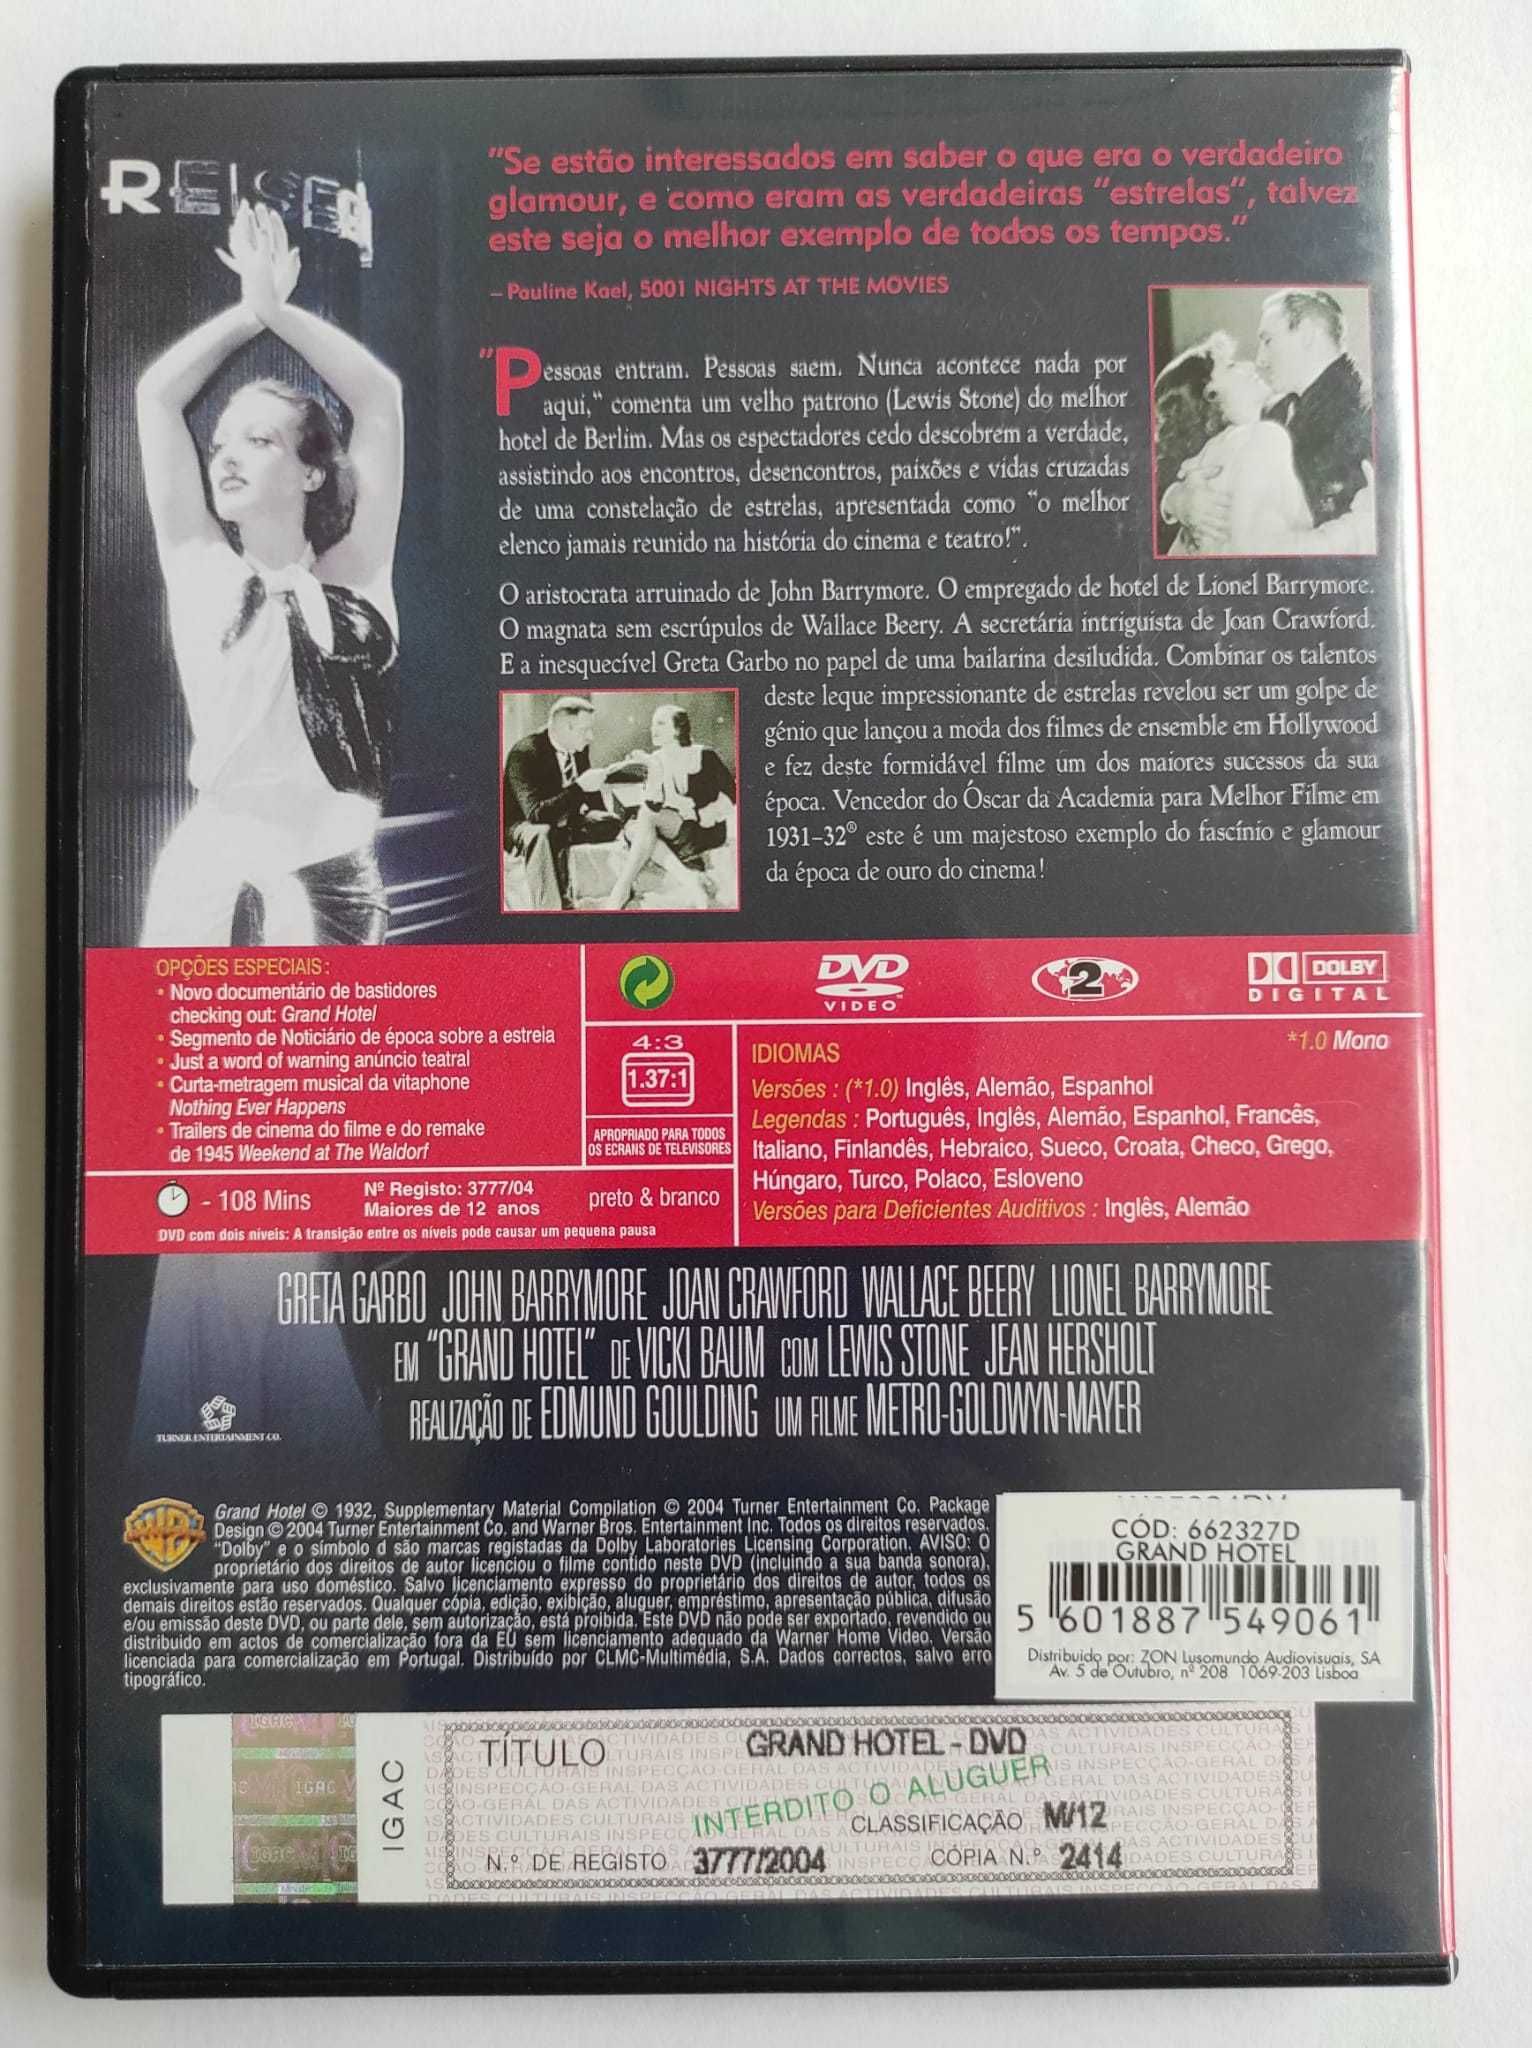 DVD “Grand Hotel”, com Greta Garbo. Raro.